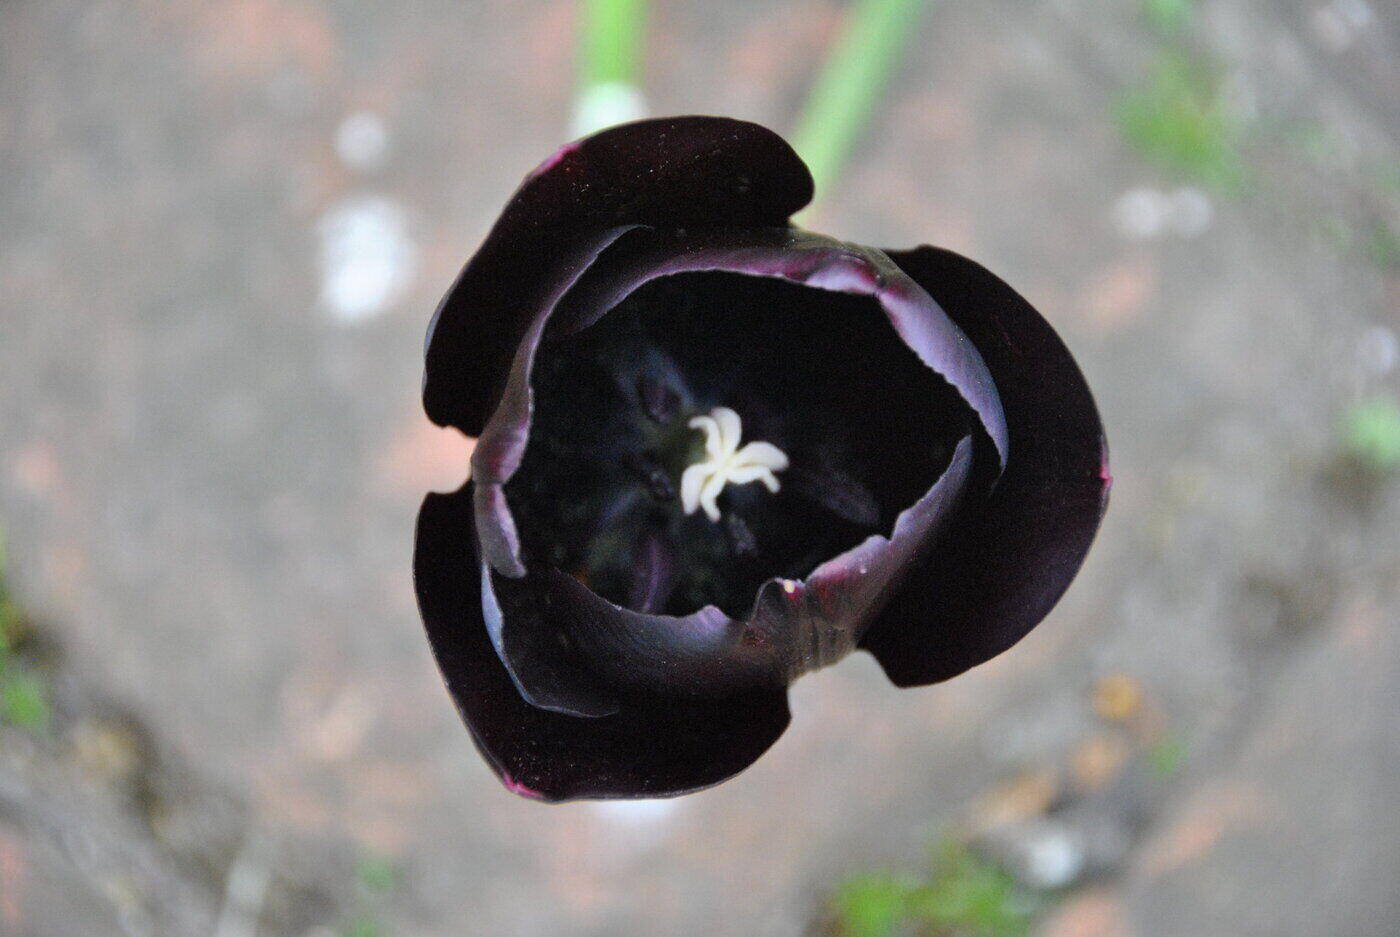 tulipán casi negro - significado y simbolismo de los tulipanes